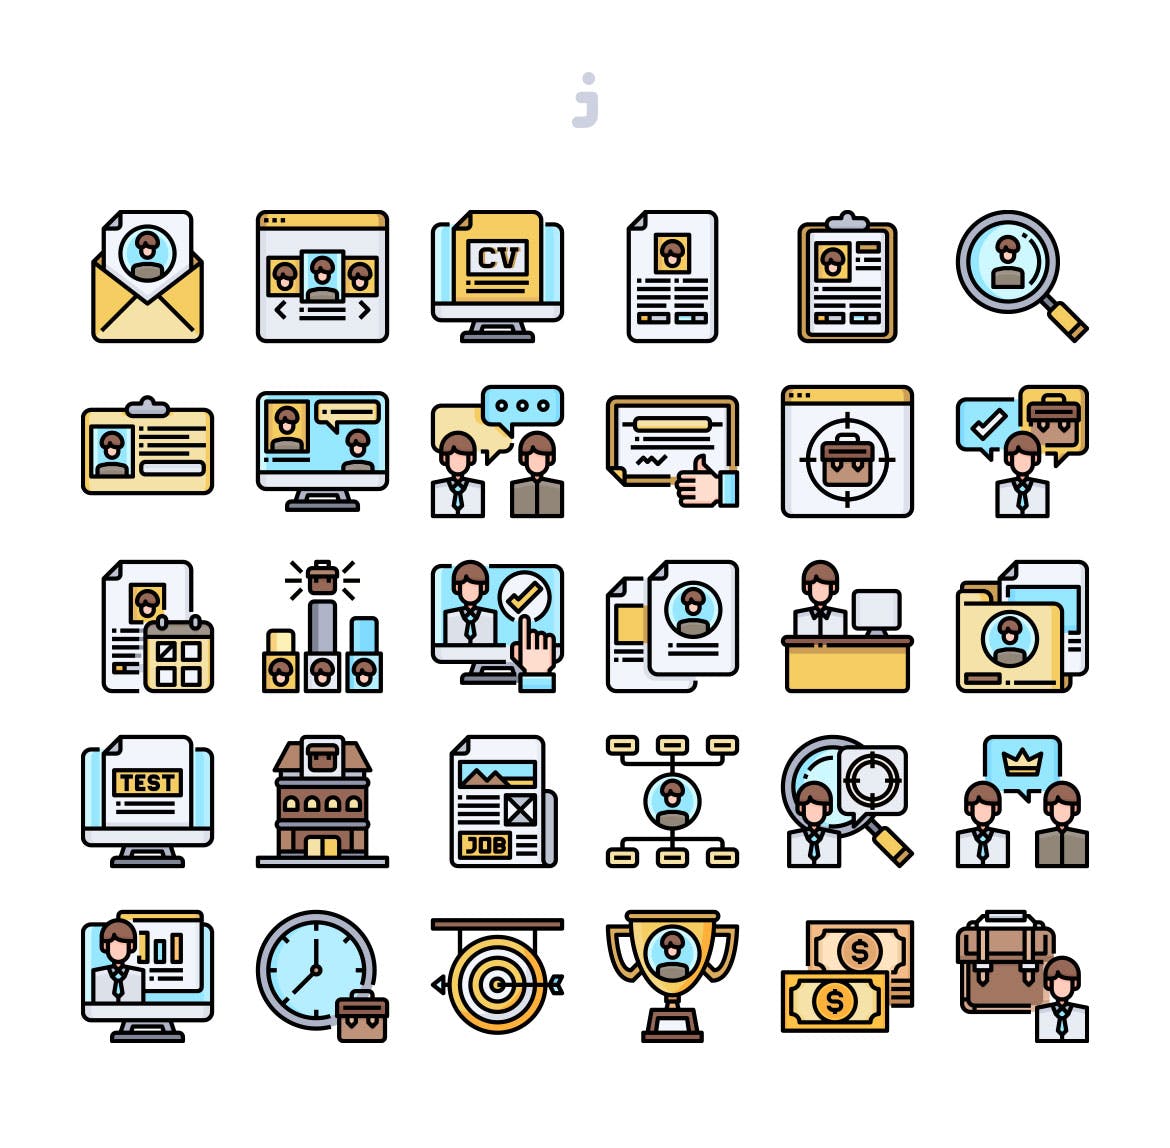 30枚人力资源主题矢量图标 30 Human Resources Icons插图(1)